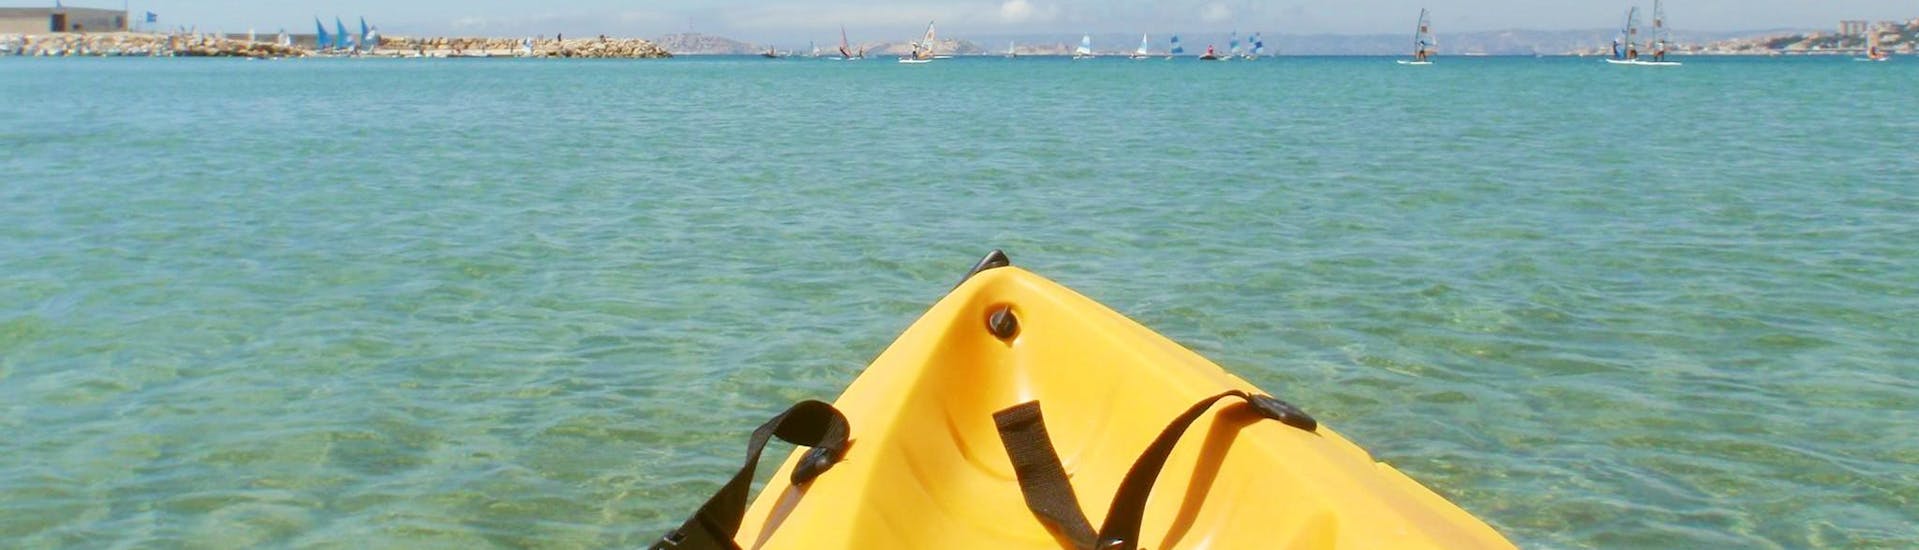 Leichte Kayak & Kanu-Tour in Marseille - Côte d'Azur.